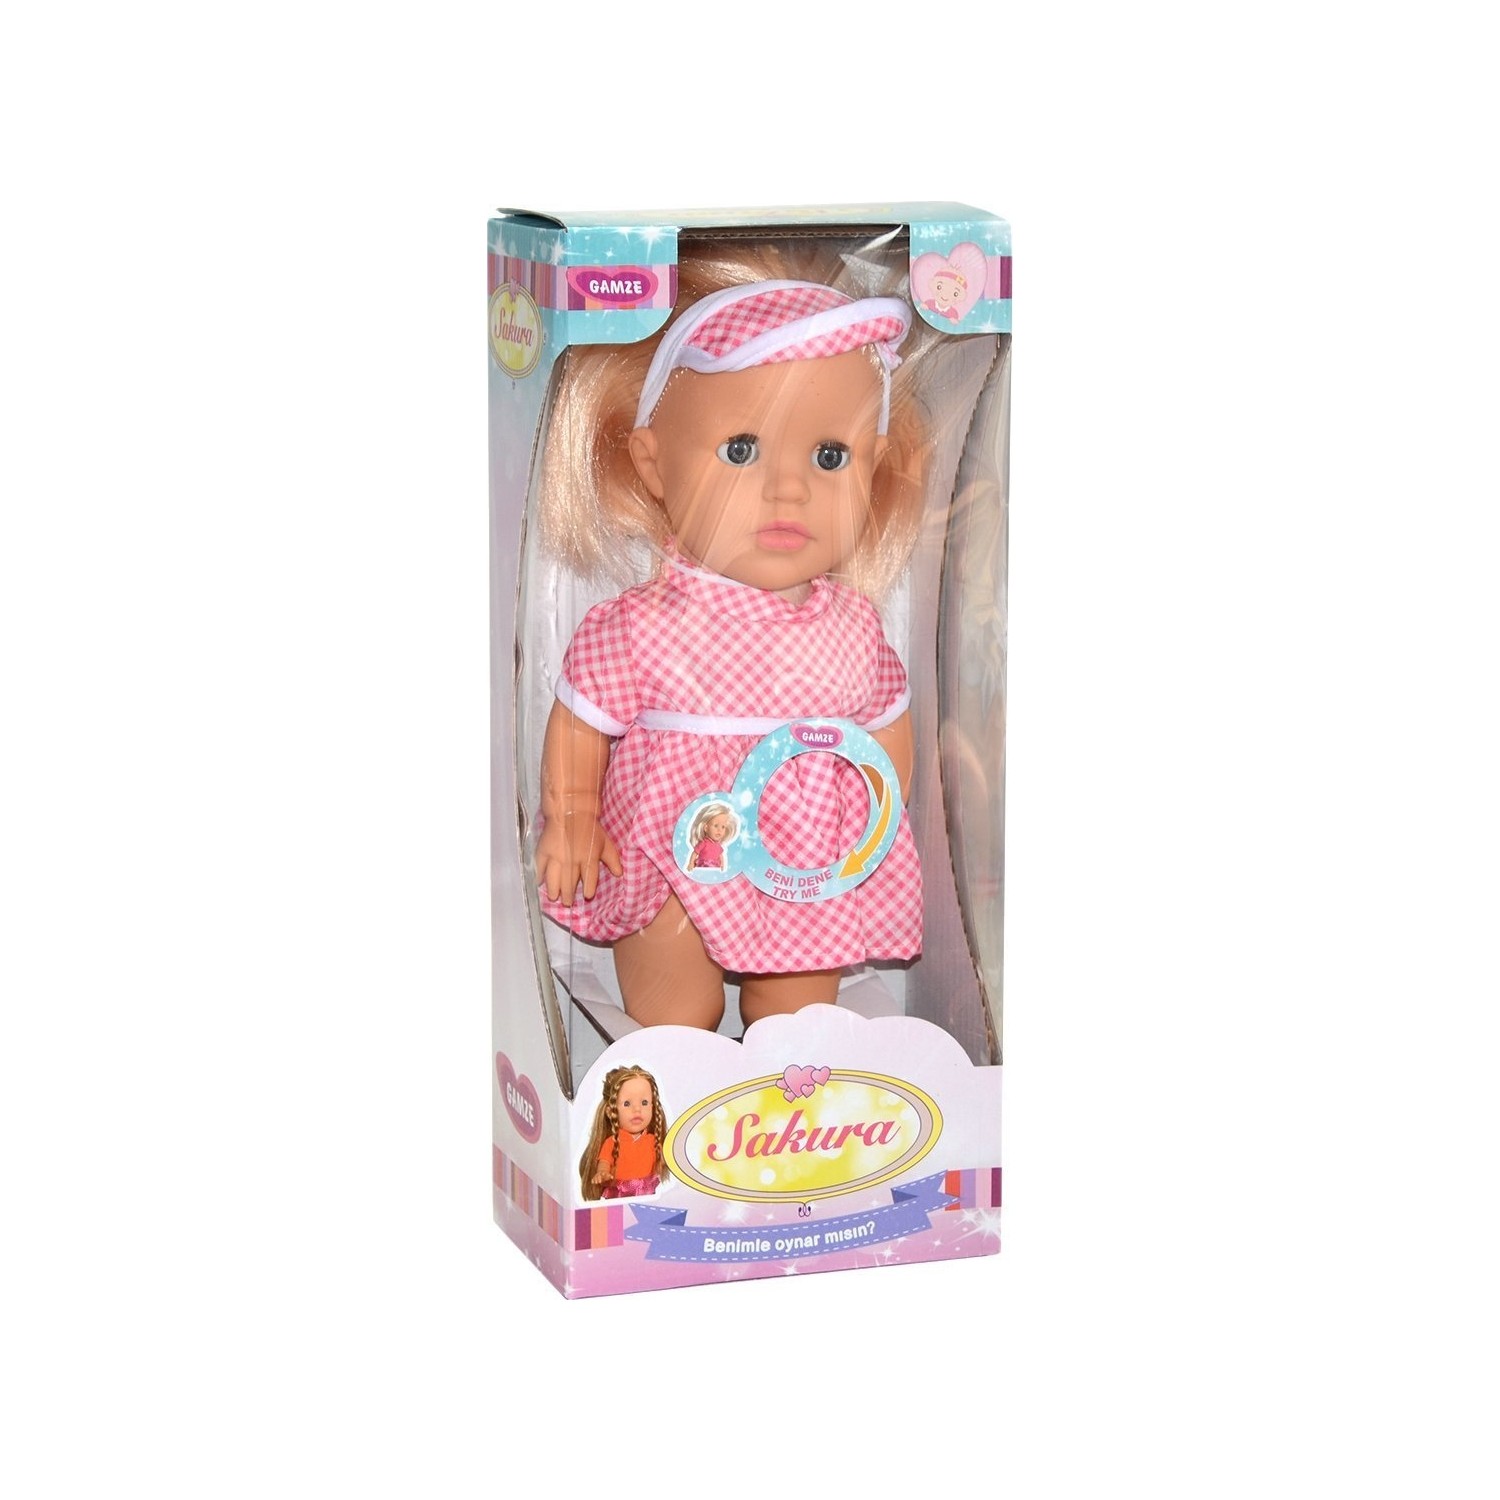 Barbie 2671 Gamze Oynar Gözlü Konuşan Sakura Bebek Fiyatı